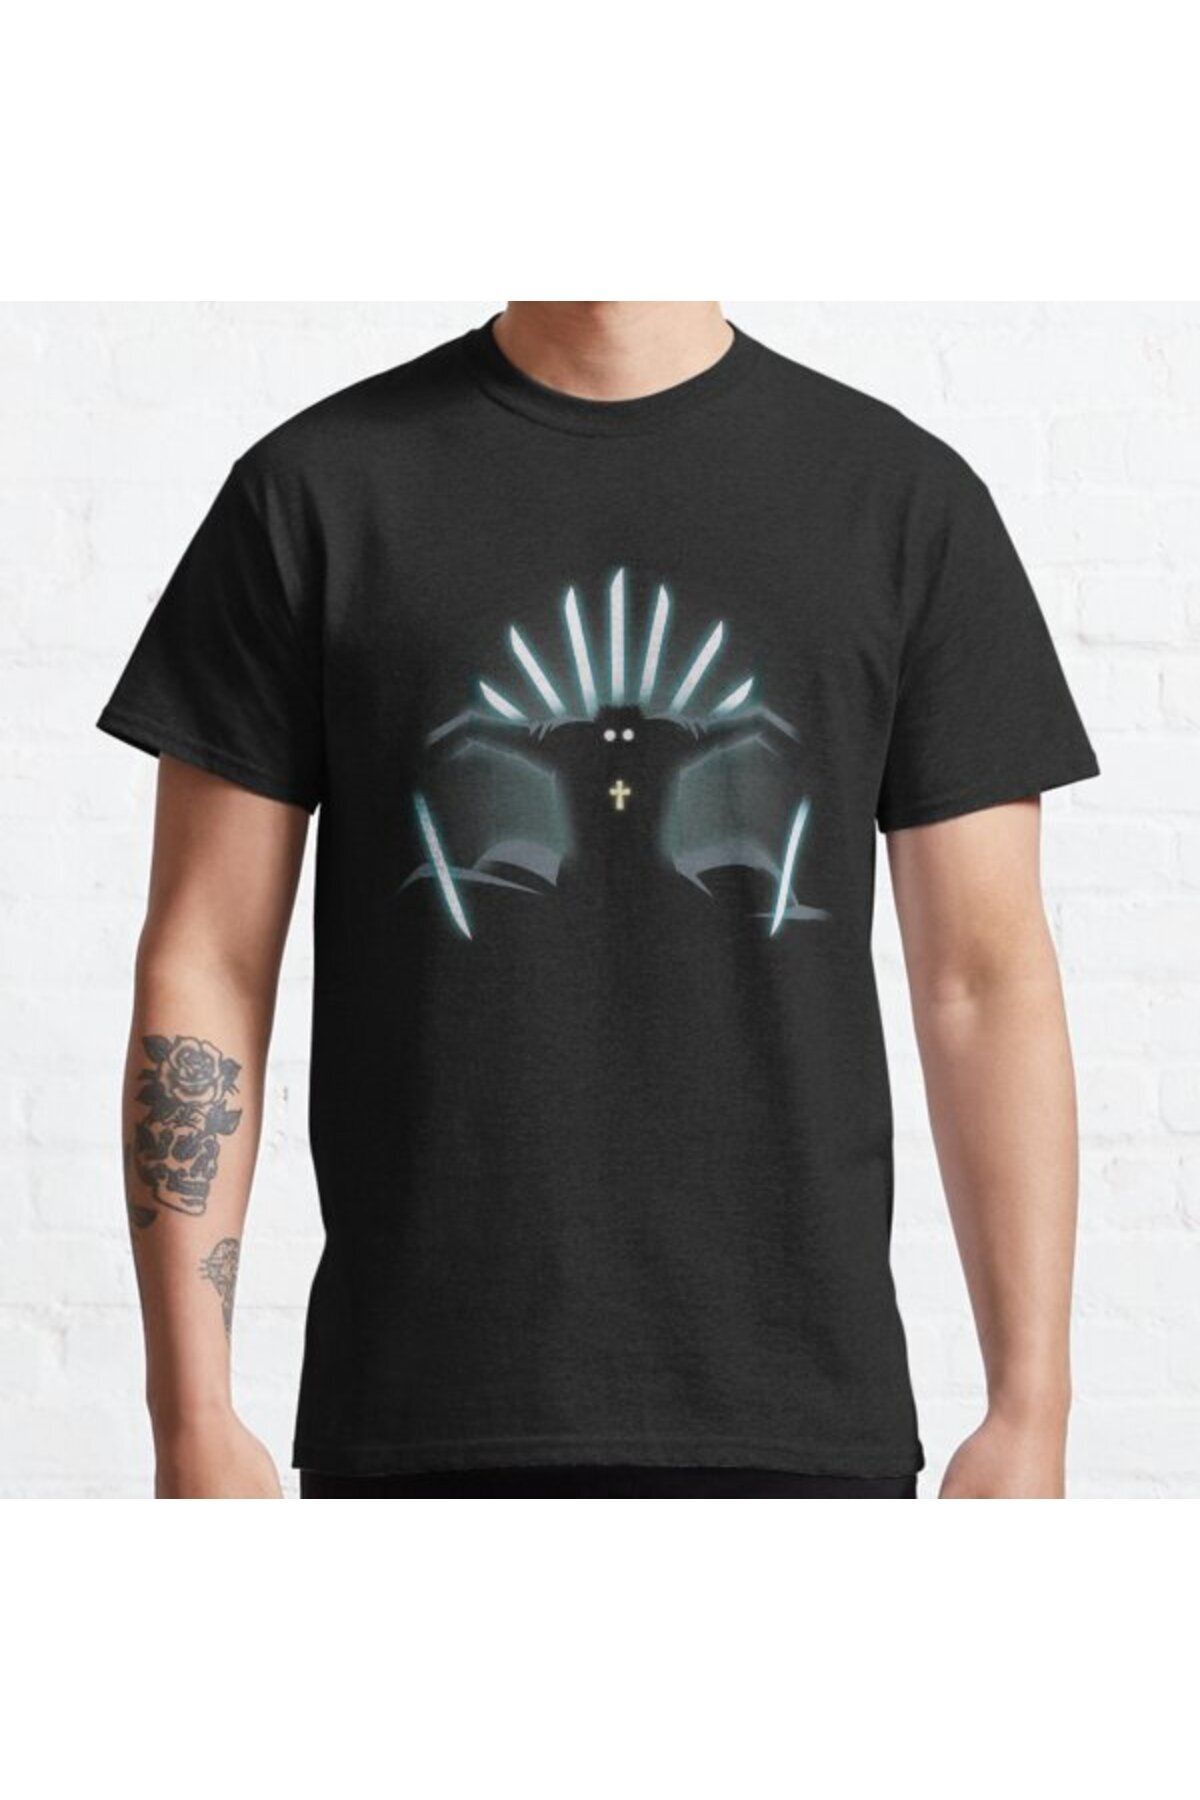 ZOKAWEAR Bol Kalıp Alexander Anderson - Hellsing Ultimate Tasarım Baskılı T-shirt